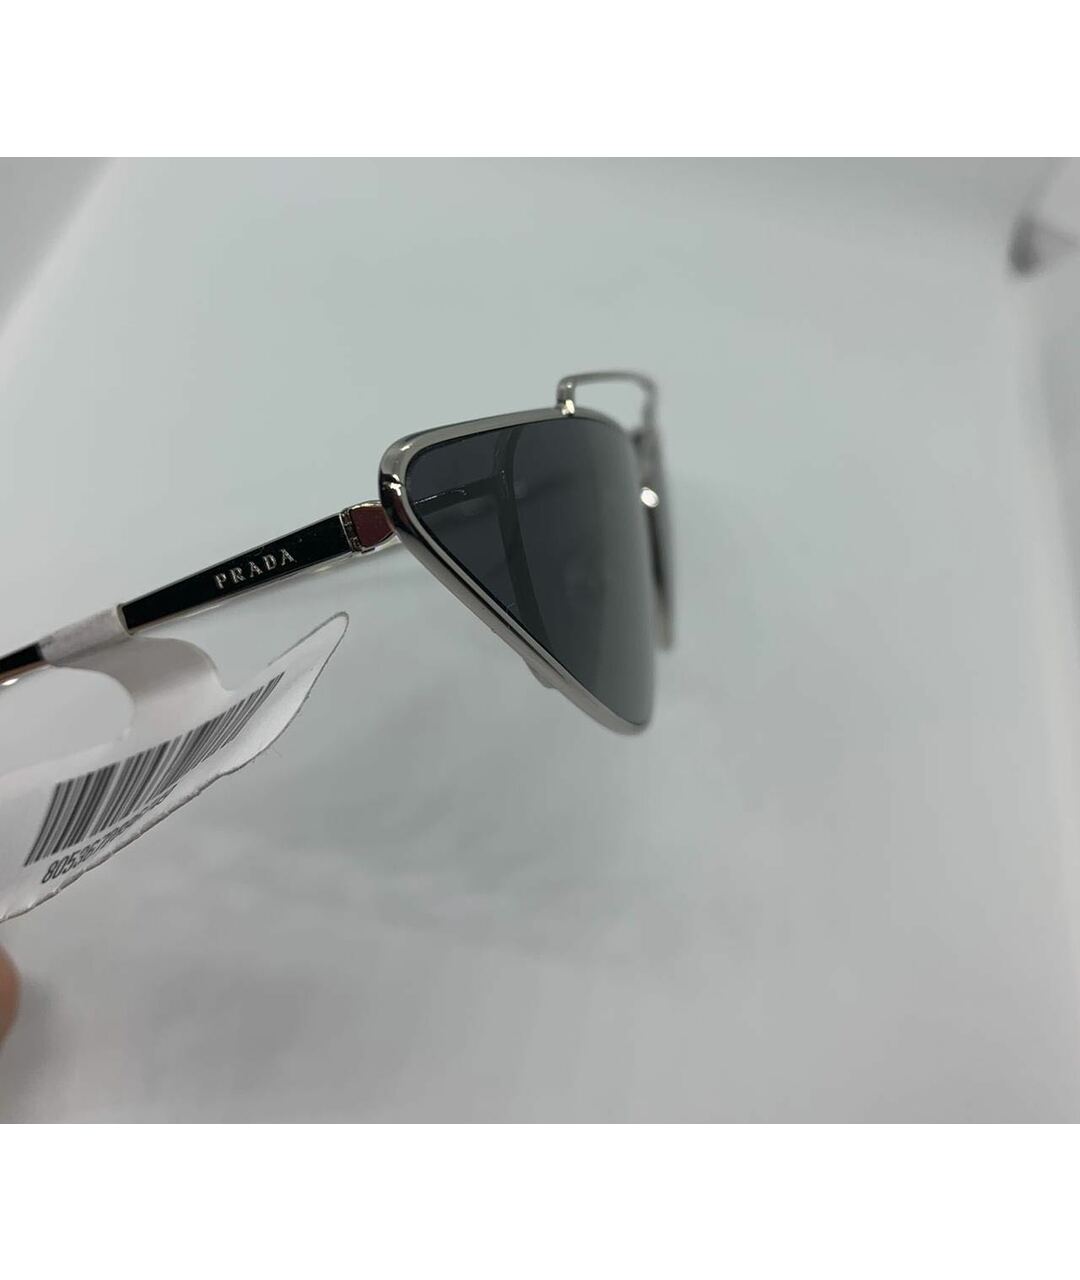 PRADA Черные металлические солнцезащитные очки, фото 3